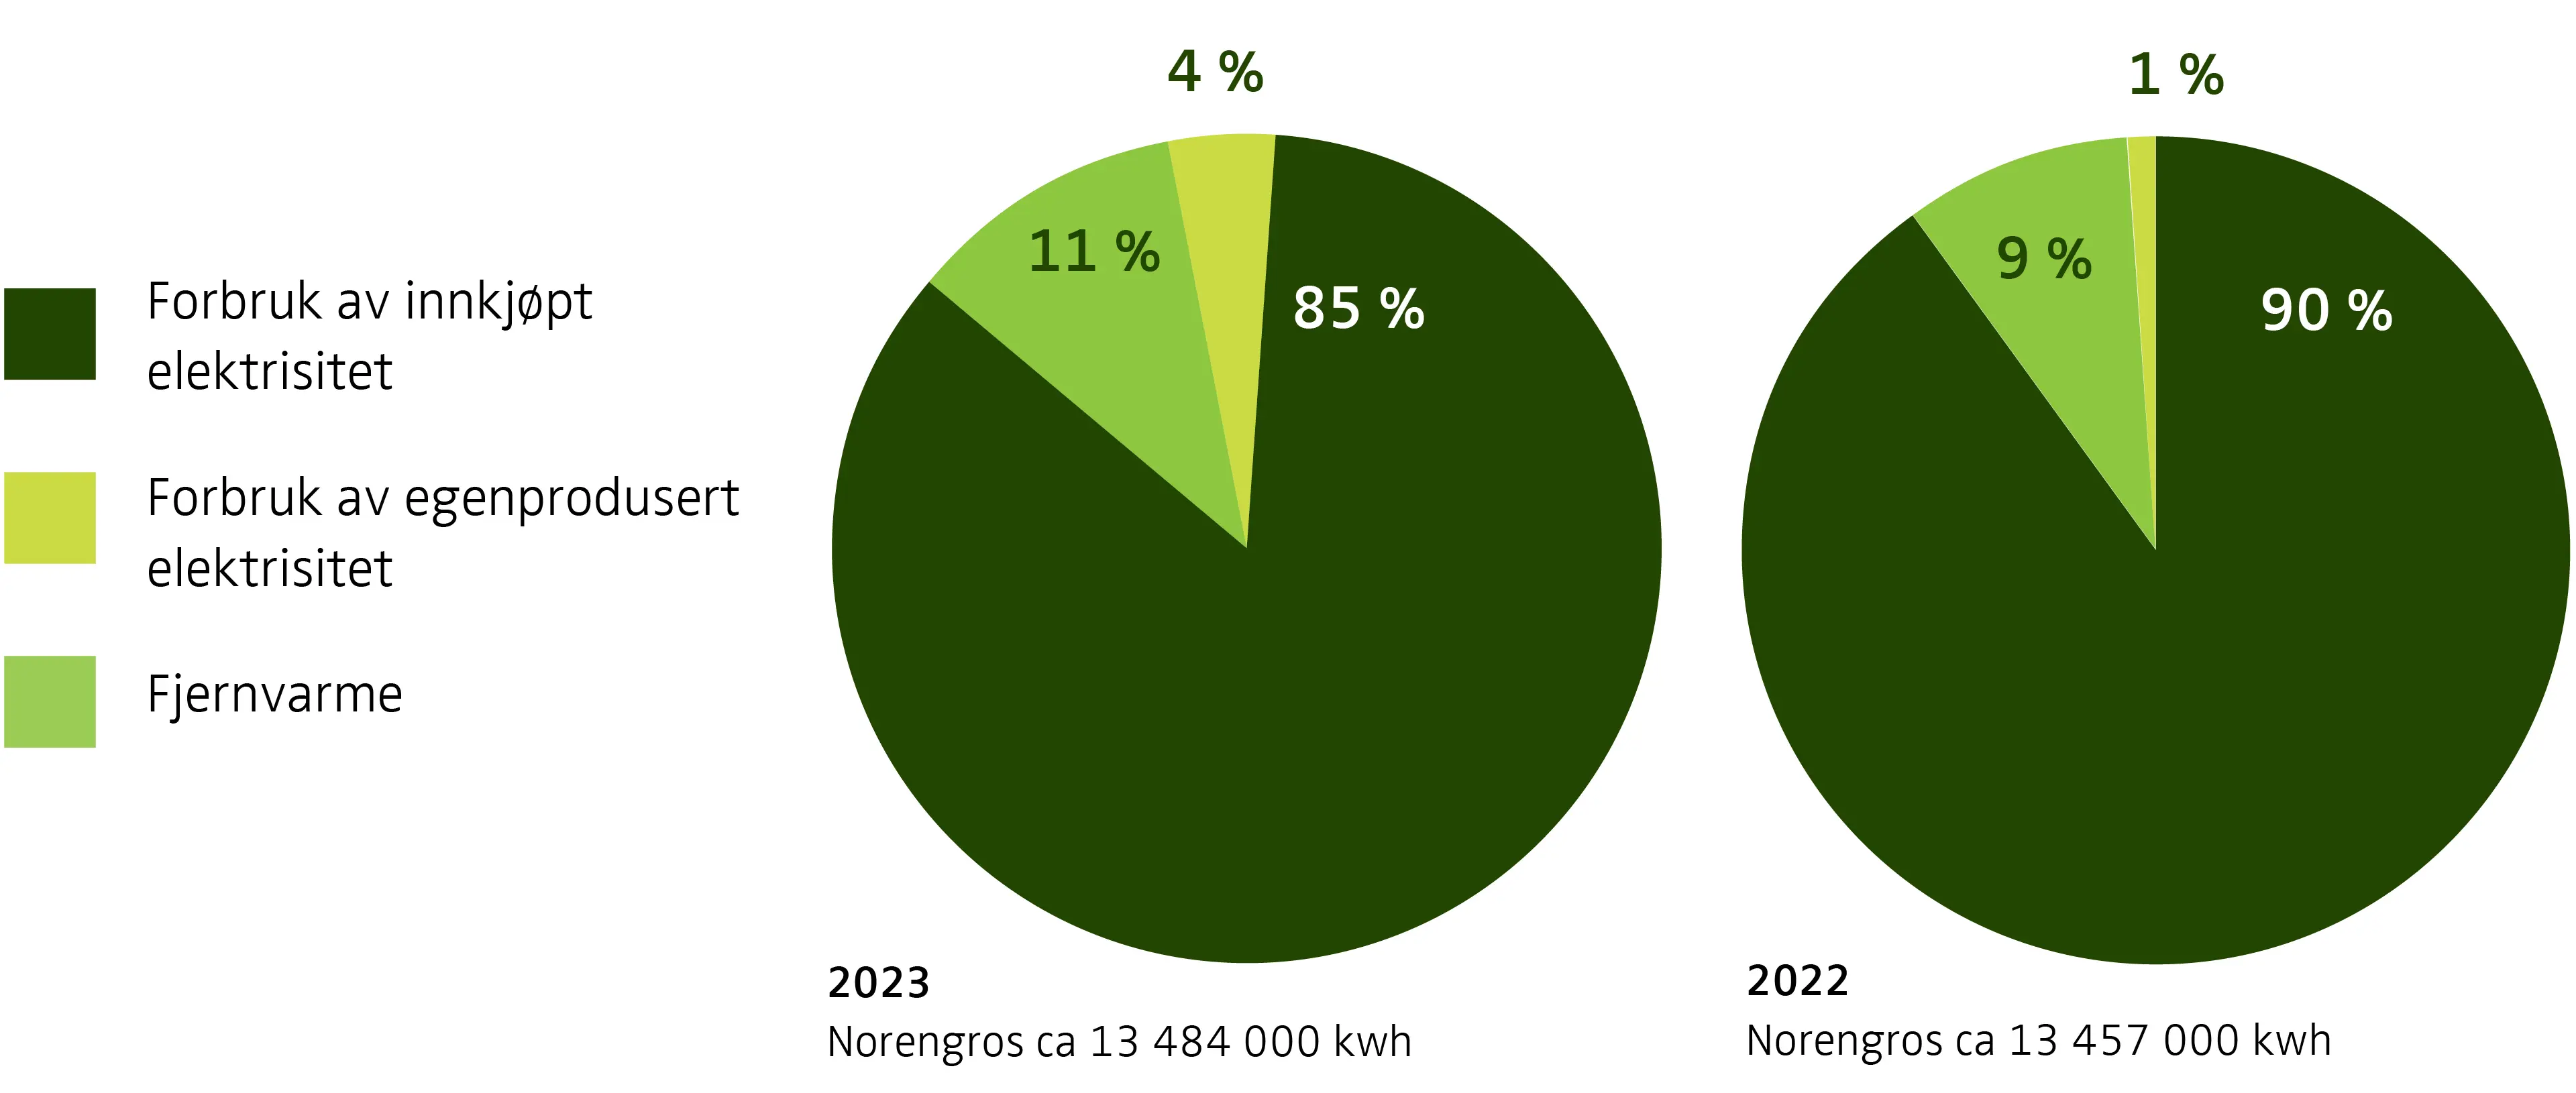 Kakediagram som viser fordelingen av Norengros' energimiks